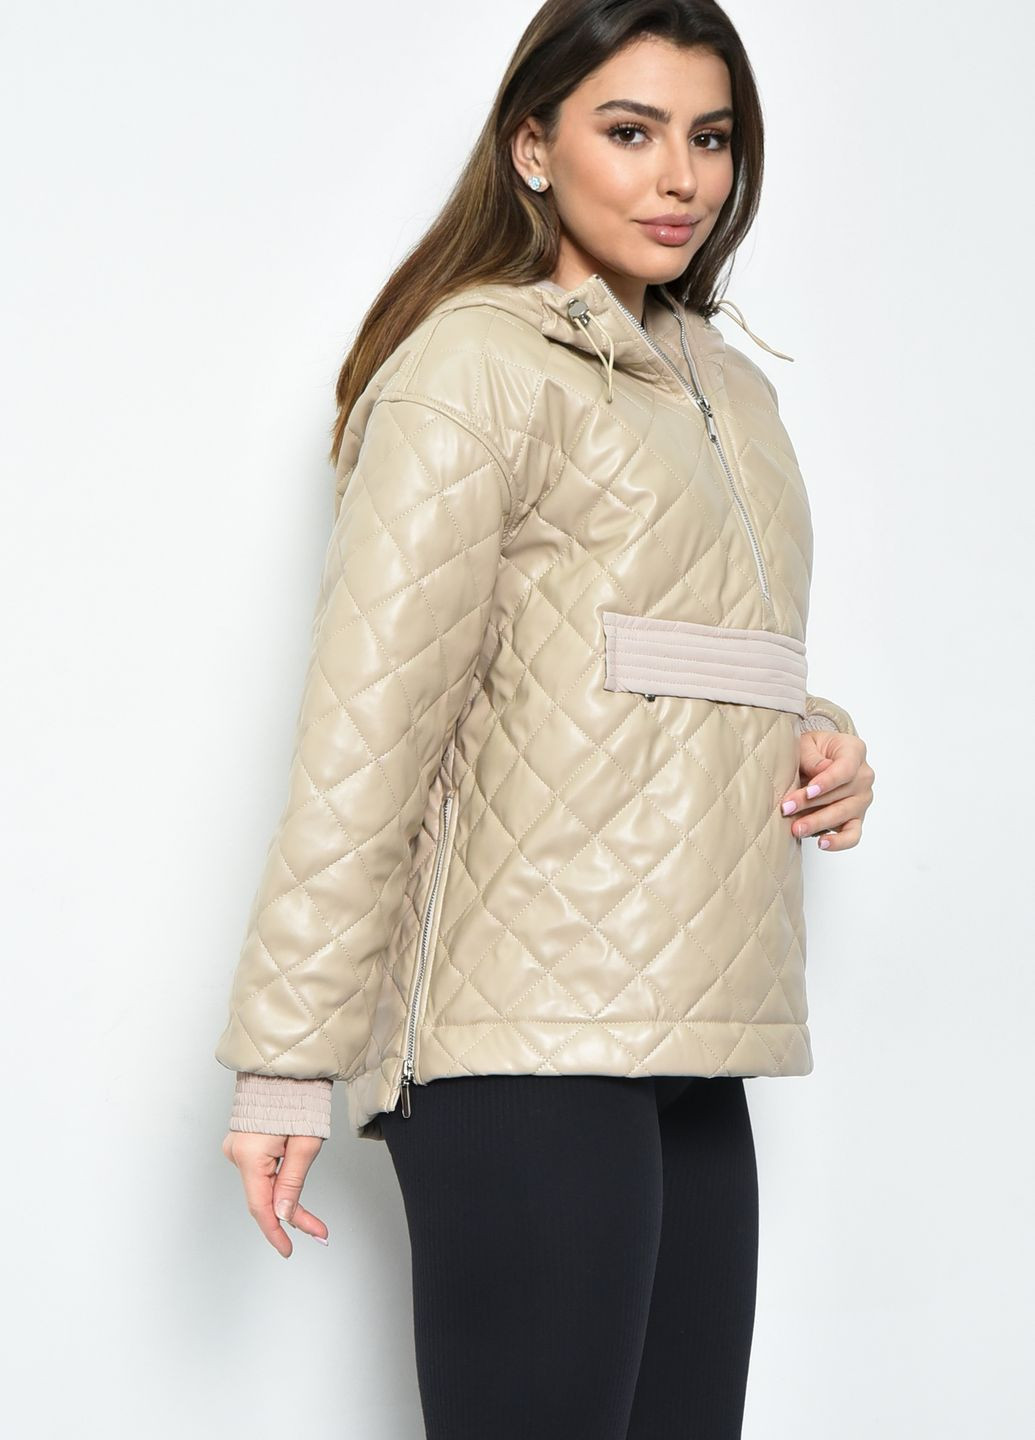 Бежевая демисезонная куртка-анорак женская демисезонная полубатальная из экокожи бежевого цвета Let's Shop